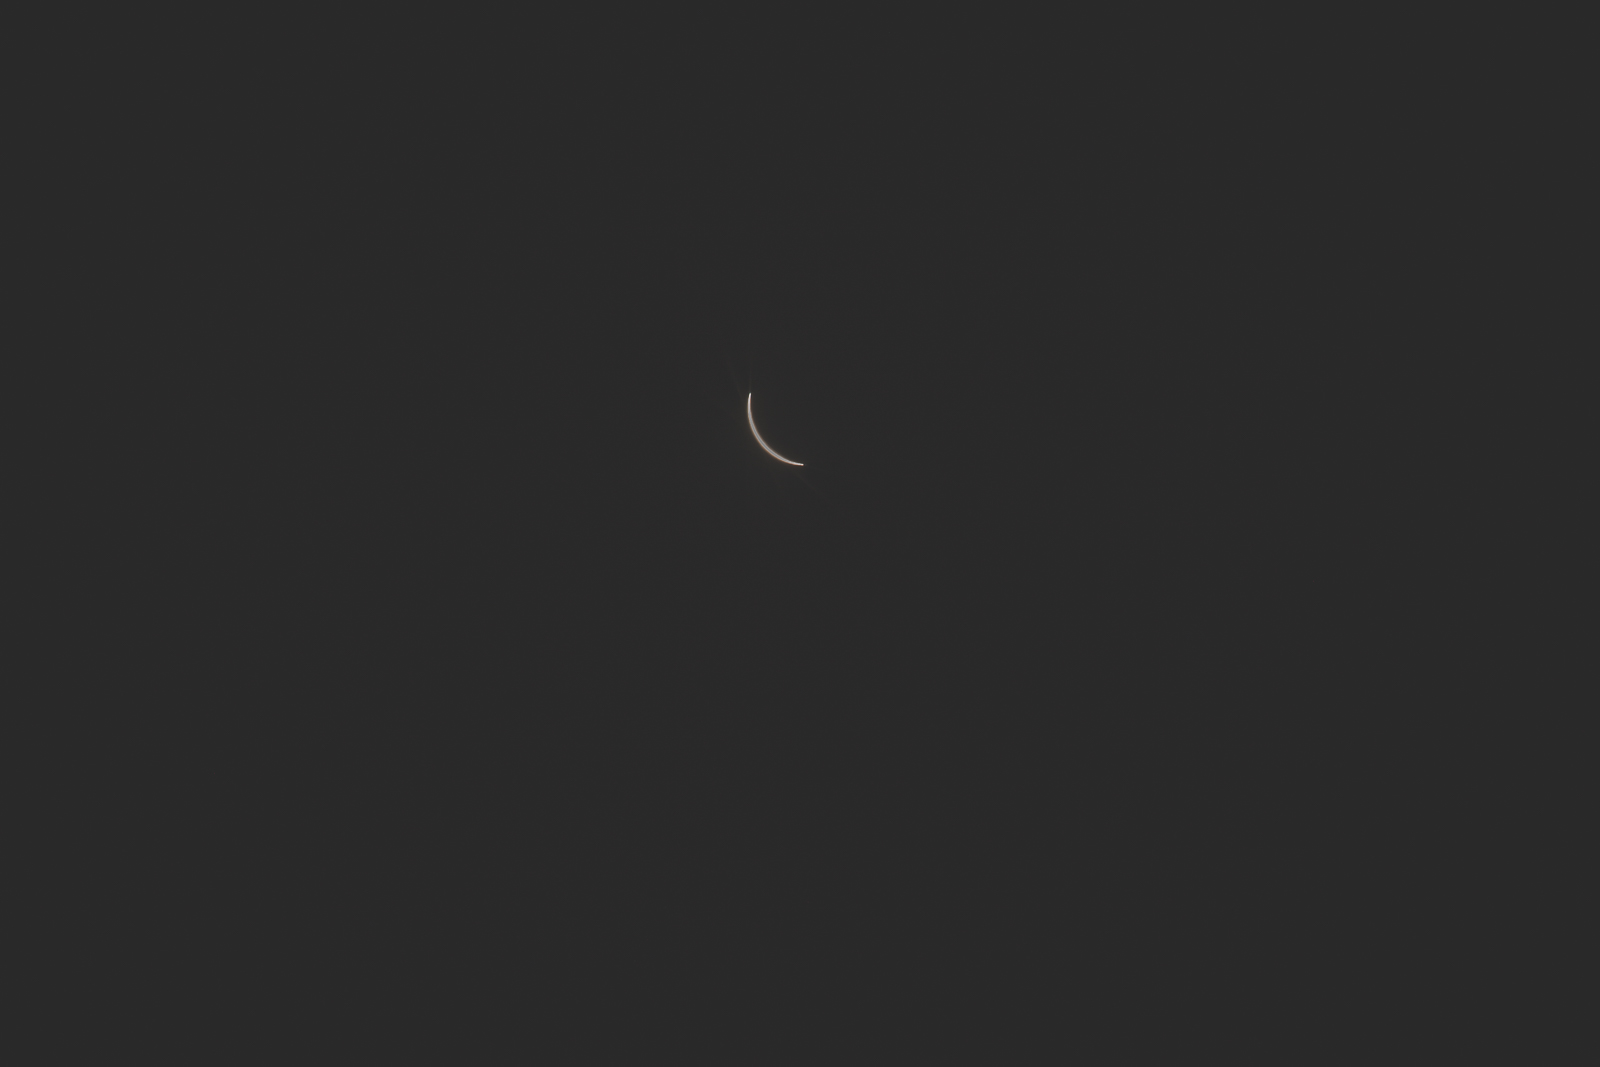 Eclipse2017-blog-0398.jpg